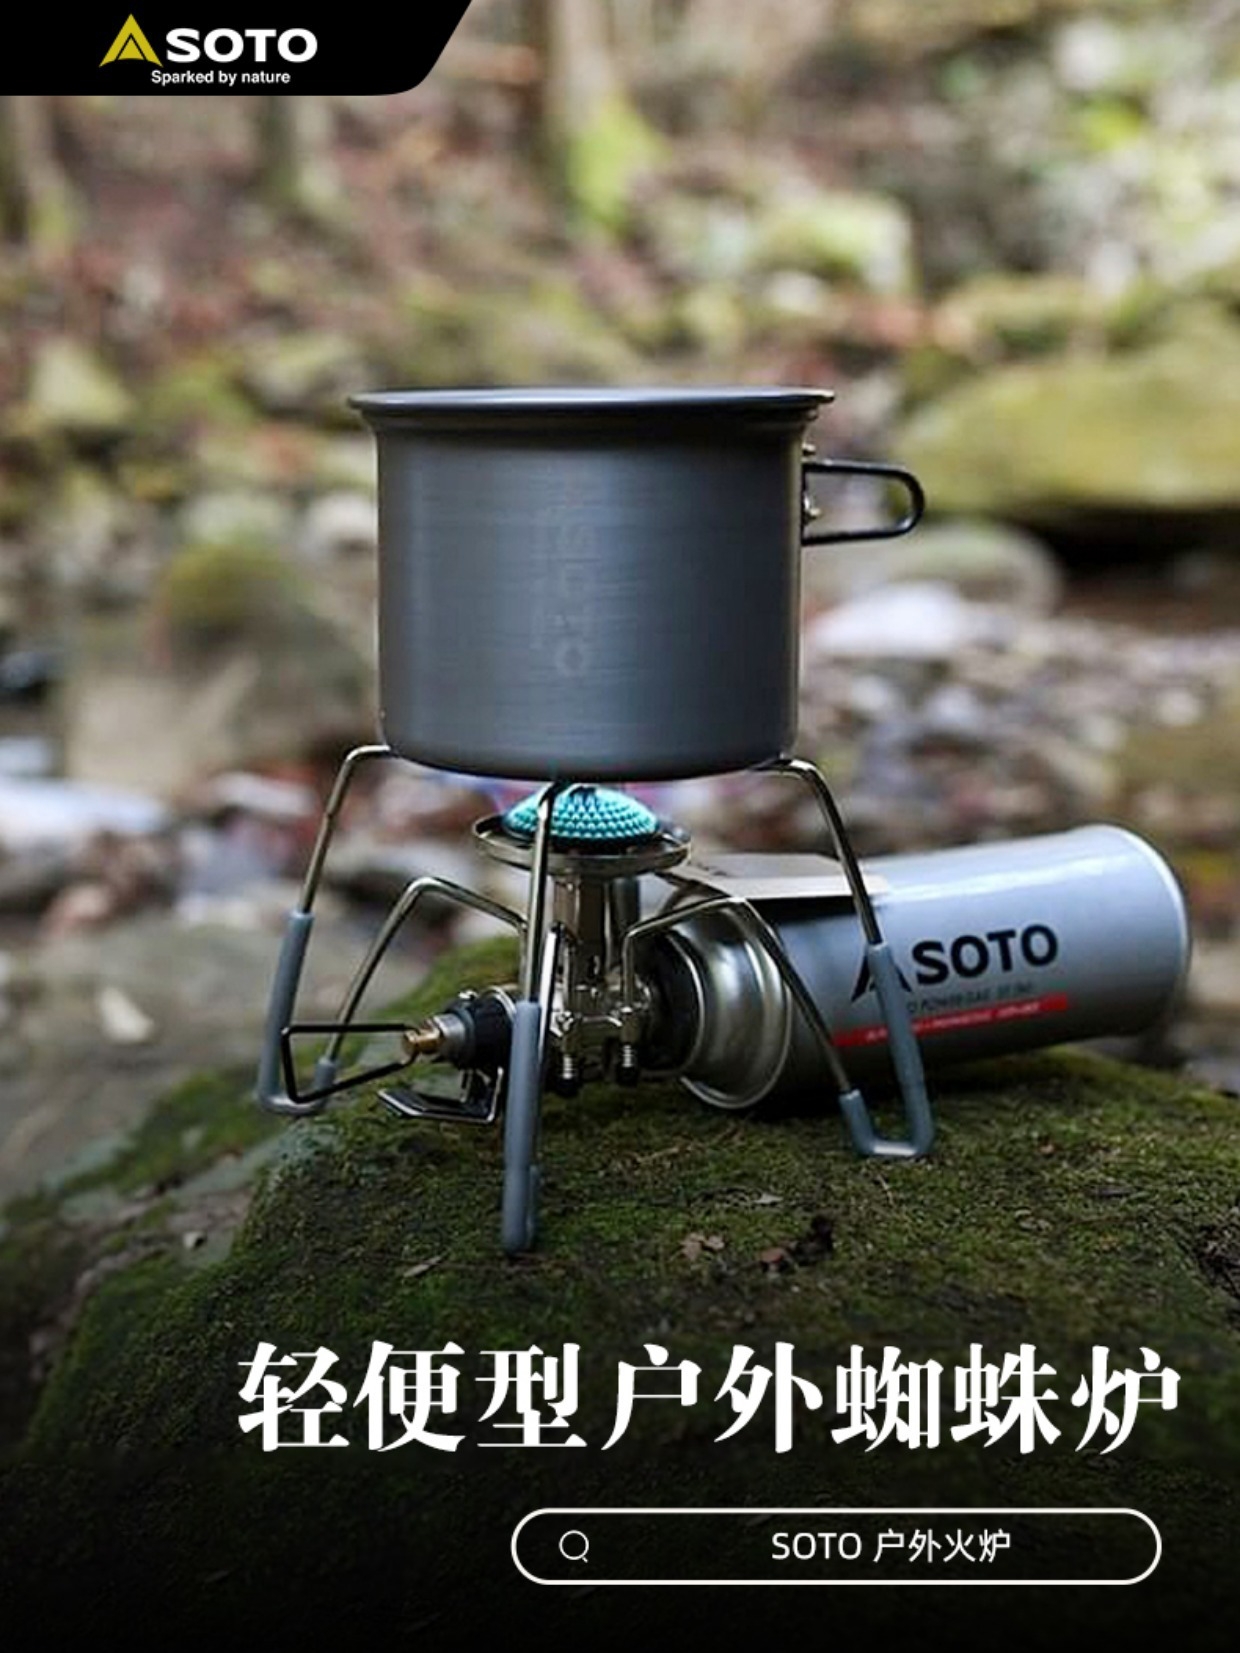 日本soto黑蜘蛛350g戶外露營自駕猛火氣爐一體式燃氣爐